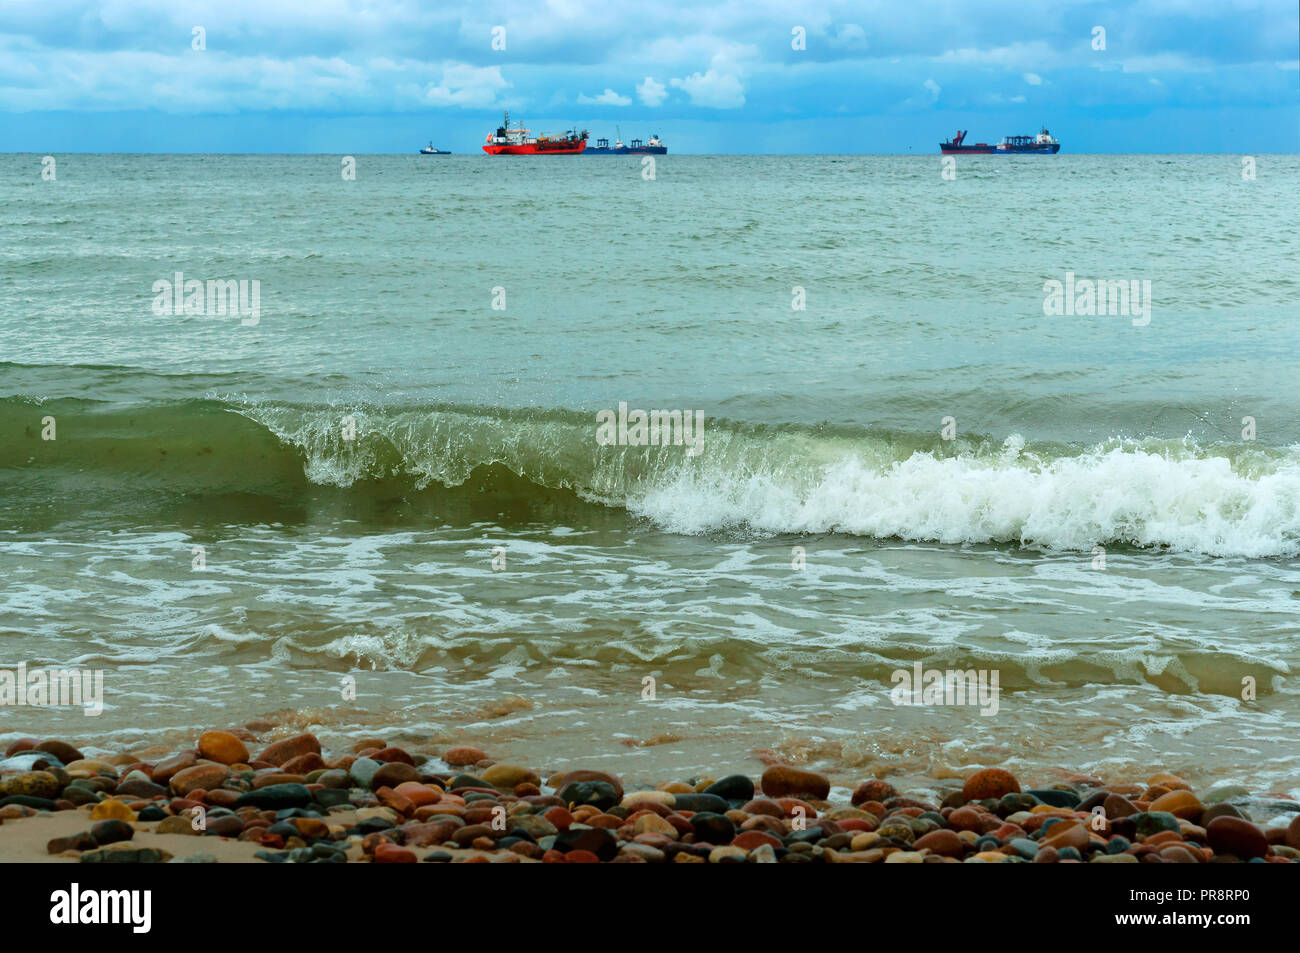 Die Ölförderung auf See, Ausrüstung für Gas- und Ölproduktion auf dem Meer, Ostsee Stockfoto